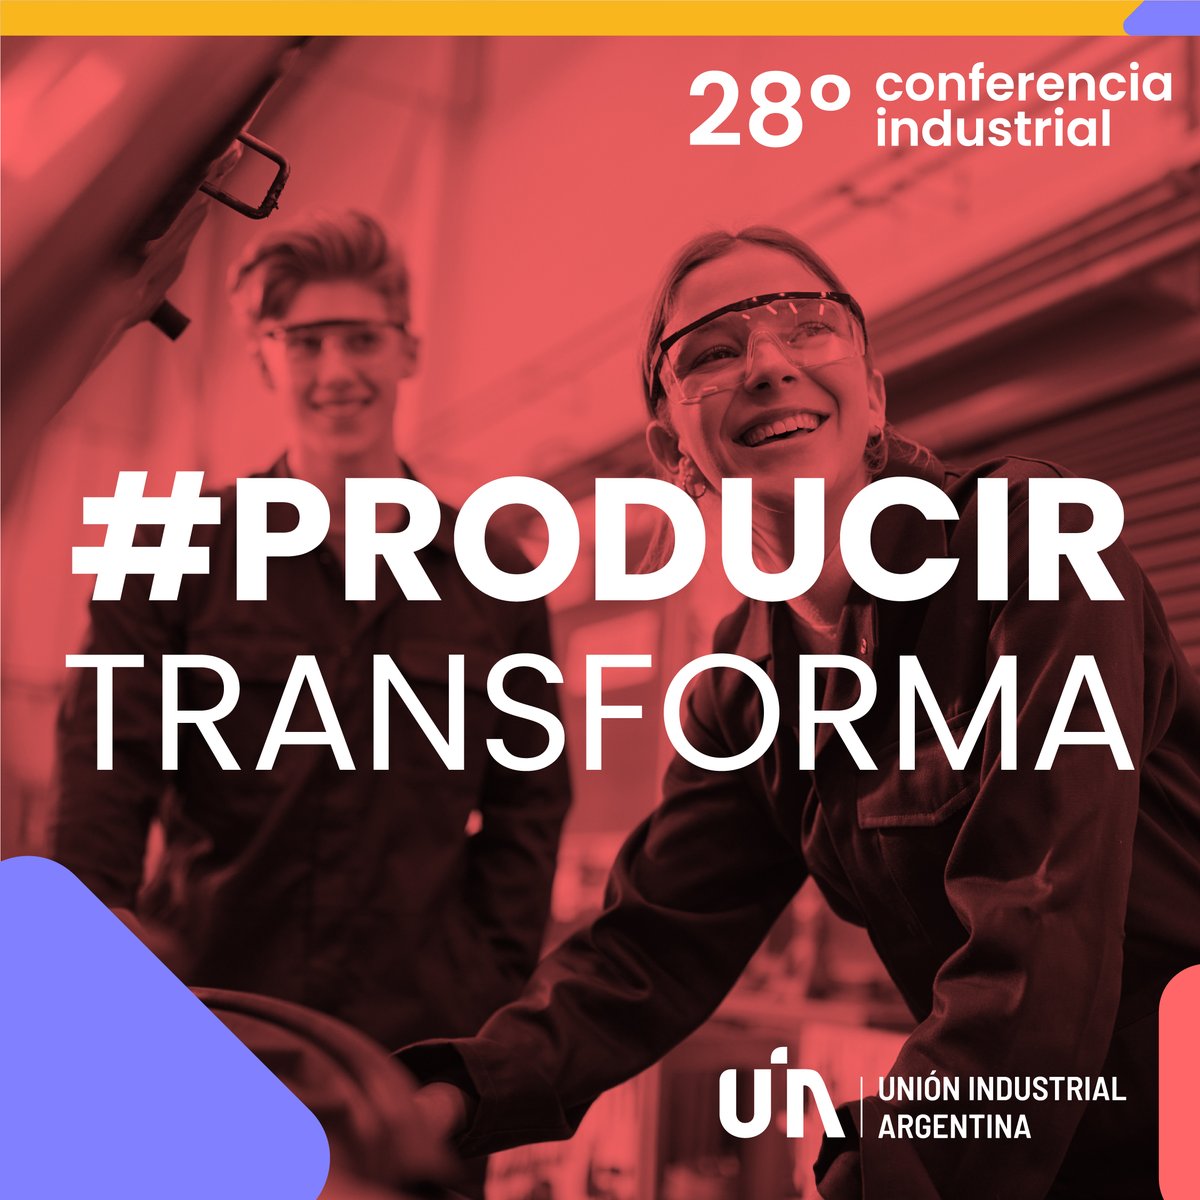 👉🏻#ConferenciaIndustrialUIA 
🤨¿Por qué #ProducirTransforma?
🇦🇷 Argentina se encuentra frente al compromiso de consolidar su protagonismo en la industria. 
Por eso, producir transforma nuestros desafíos en ideas con oportunidades de crecimiento.